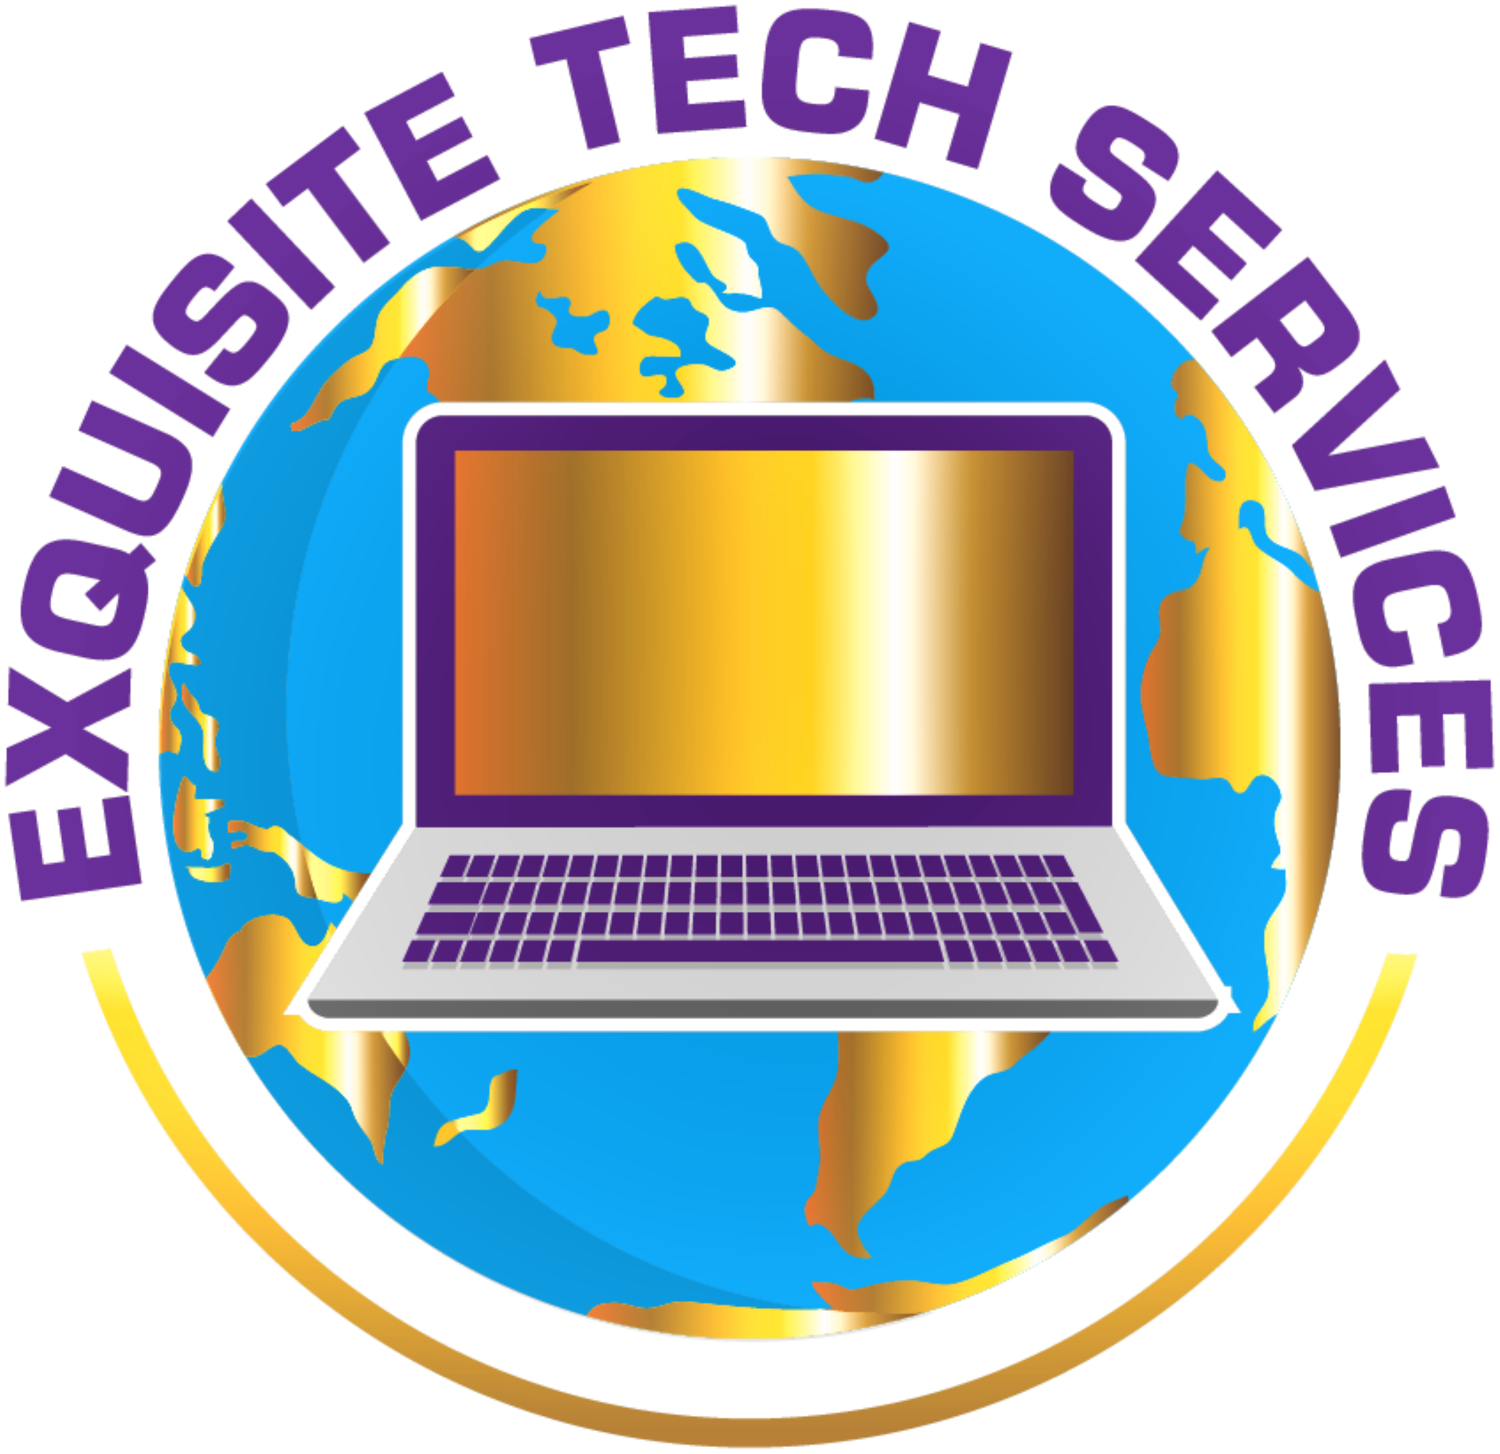 Exquisite Tech Services